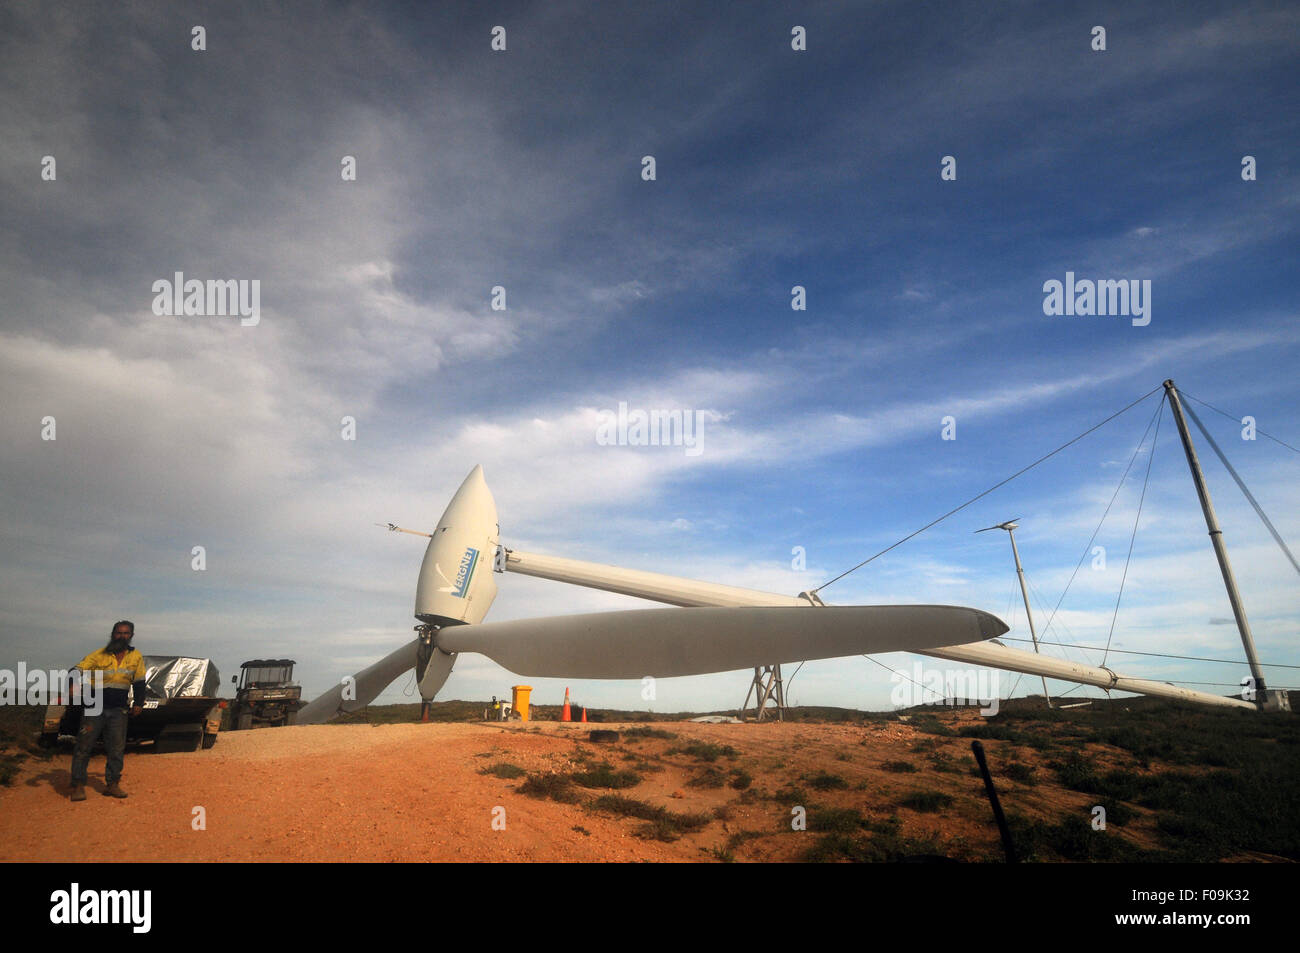 Re-levantar aerogeneradores plegado especial después que el ciclón tropical Olwyn, Coral Bay, Ningaloo, Australia Occidental Foto de stock